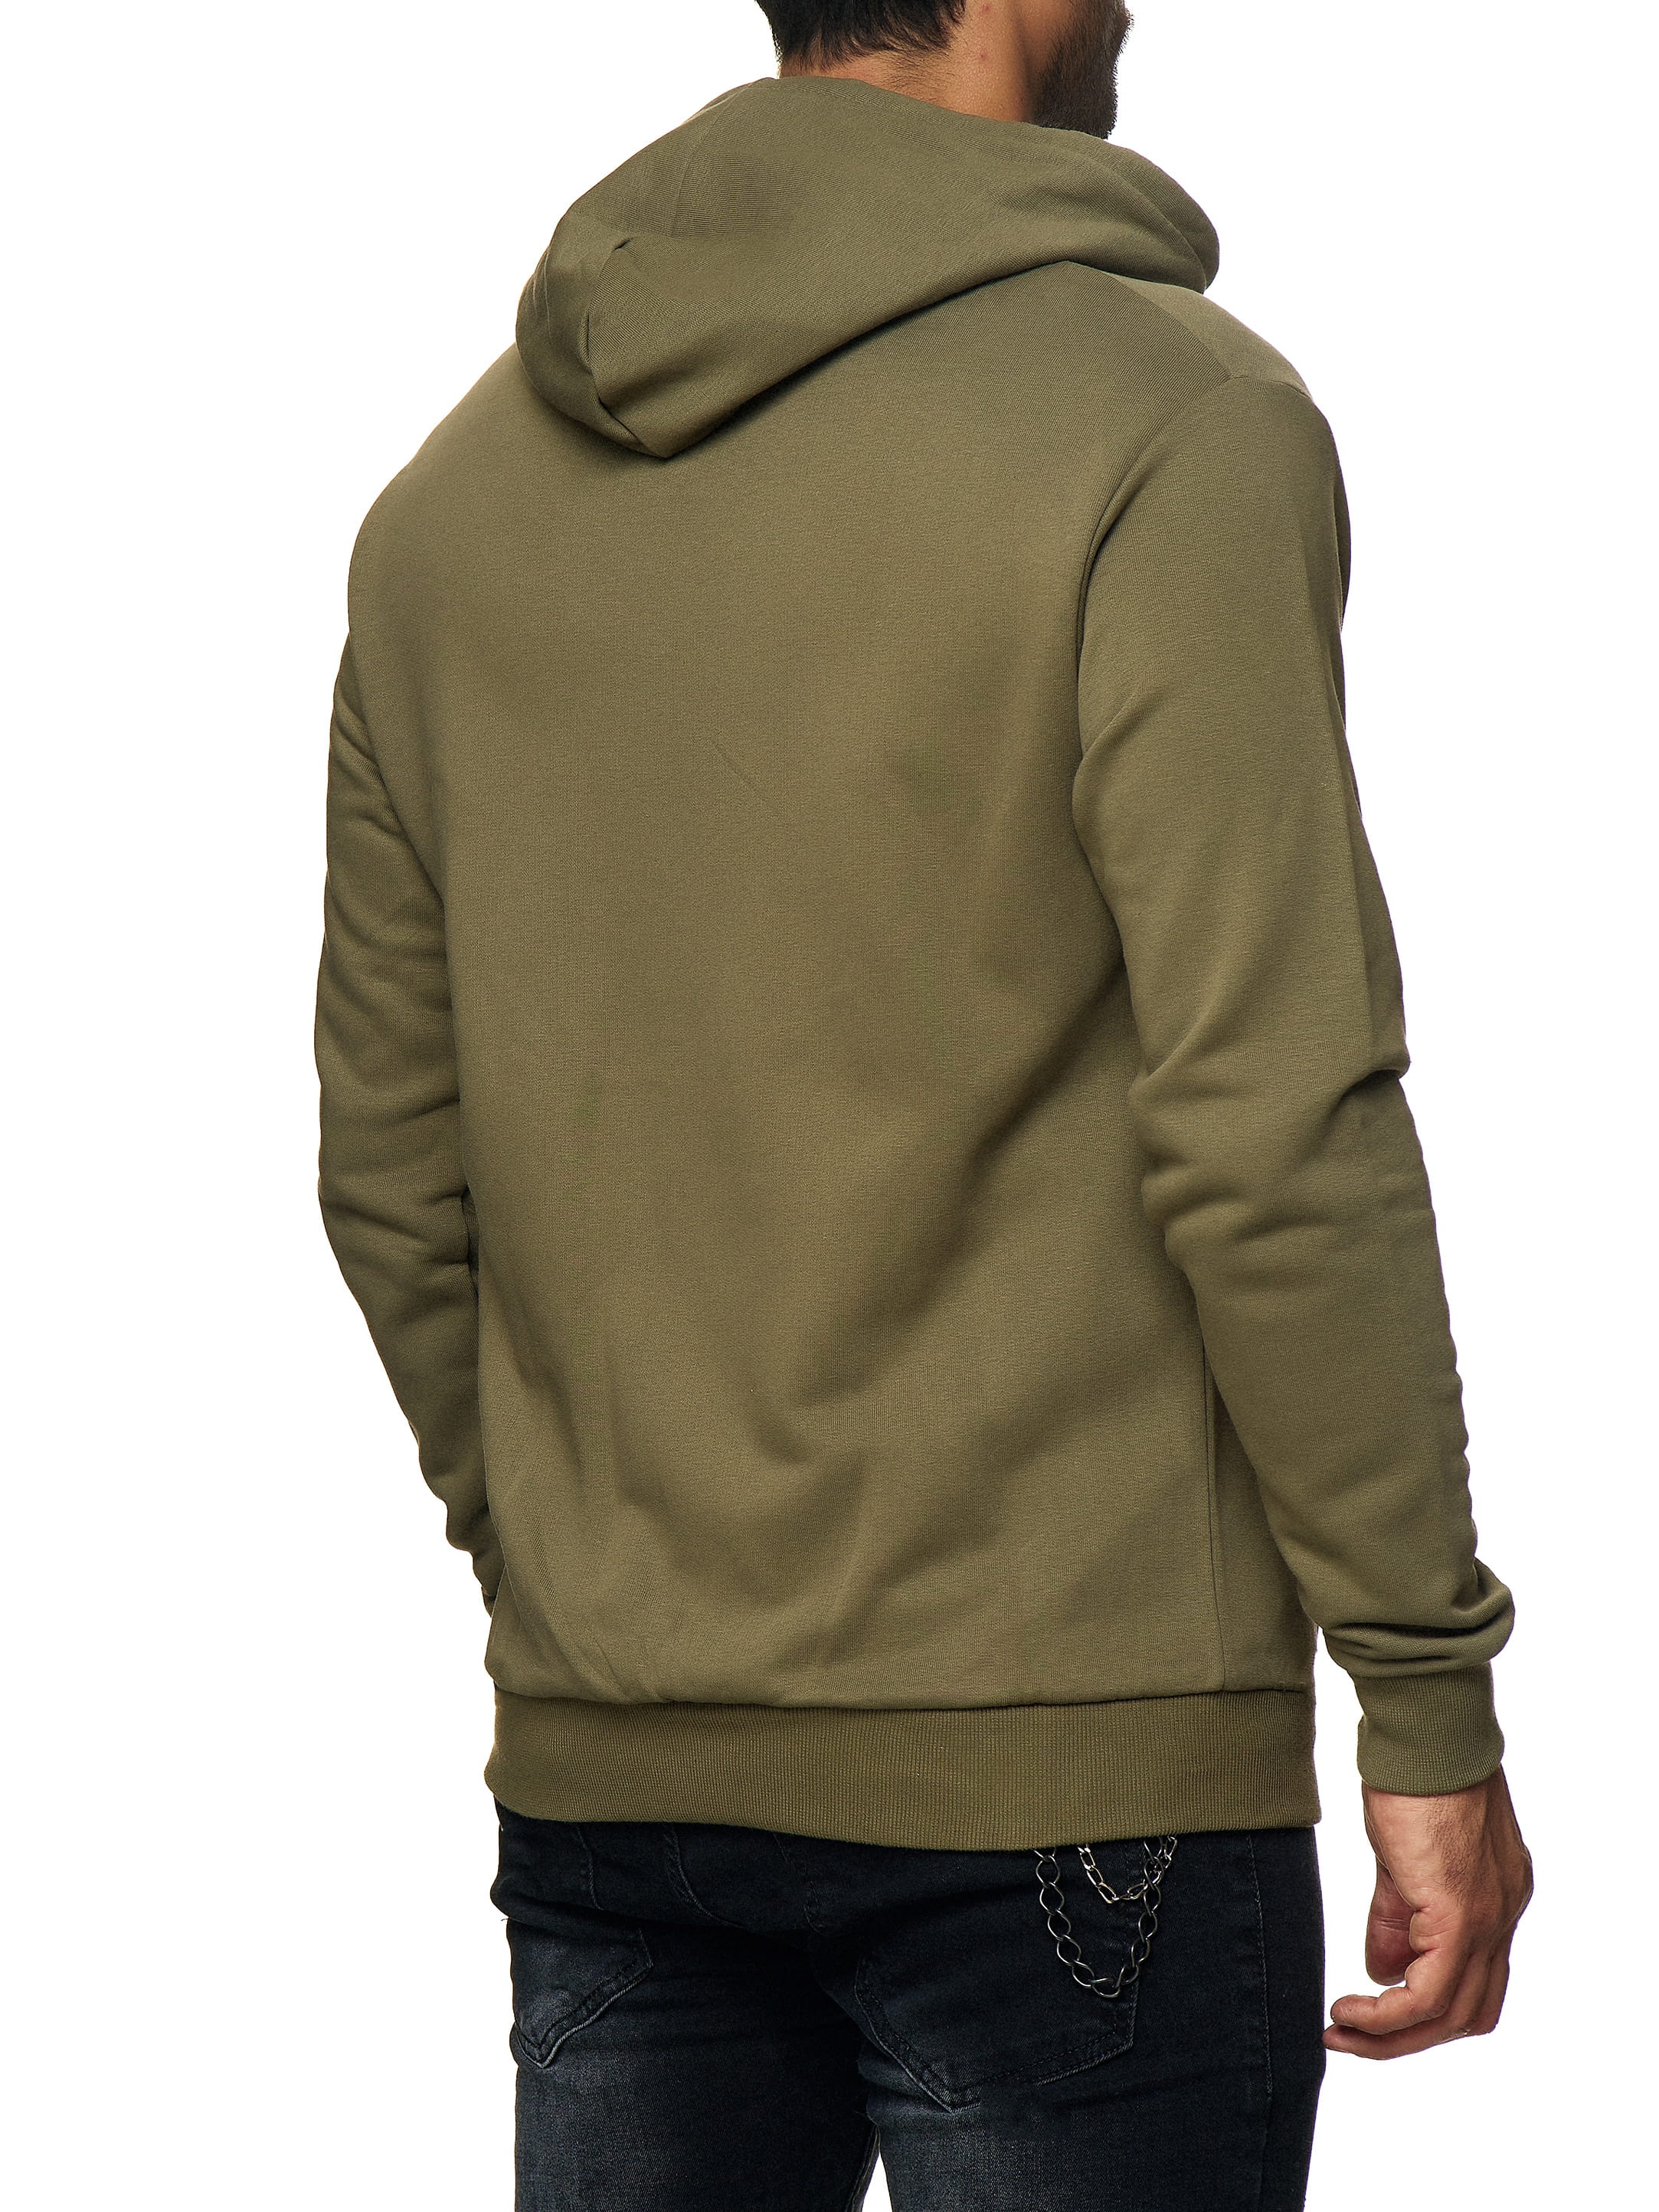 Herren Zip Hoodie Kapuzenpullover Pullover Pulli Modell BRU-006 | Hoodies | Hoodies & Sweaters Mannen | - Stijlfabriek